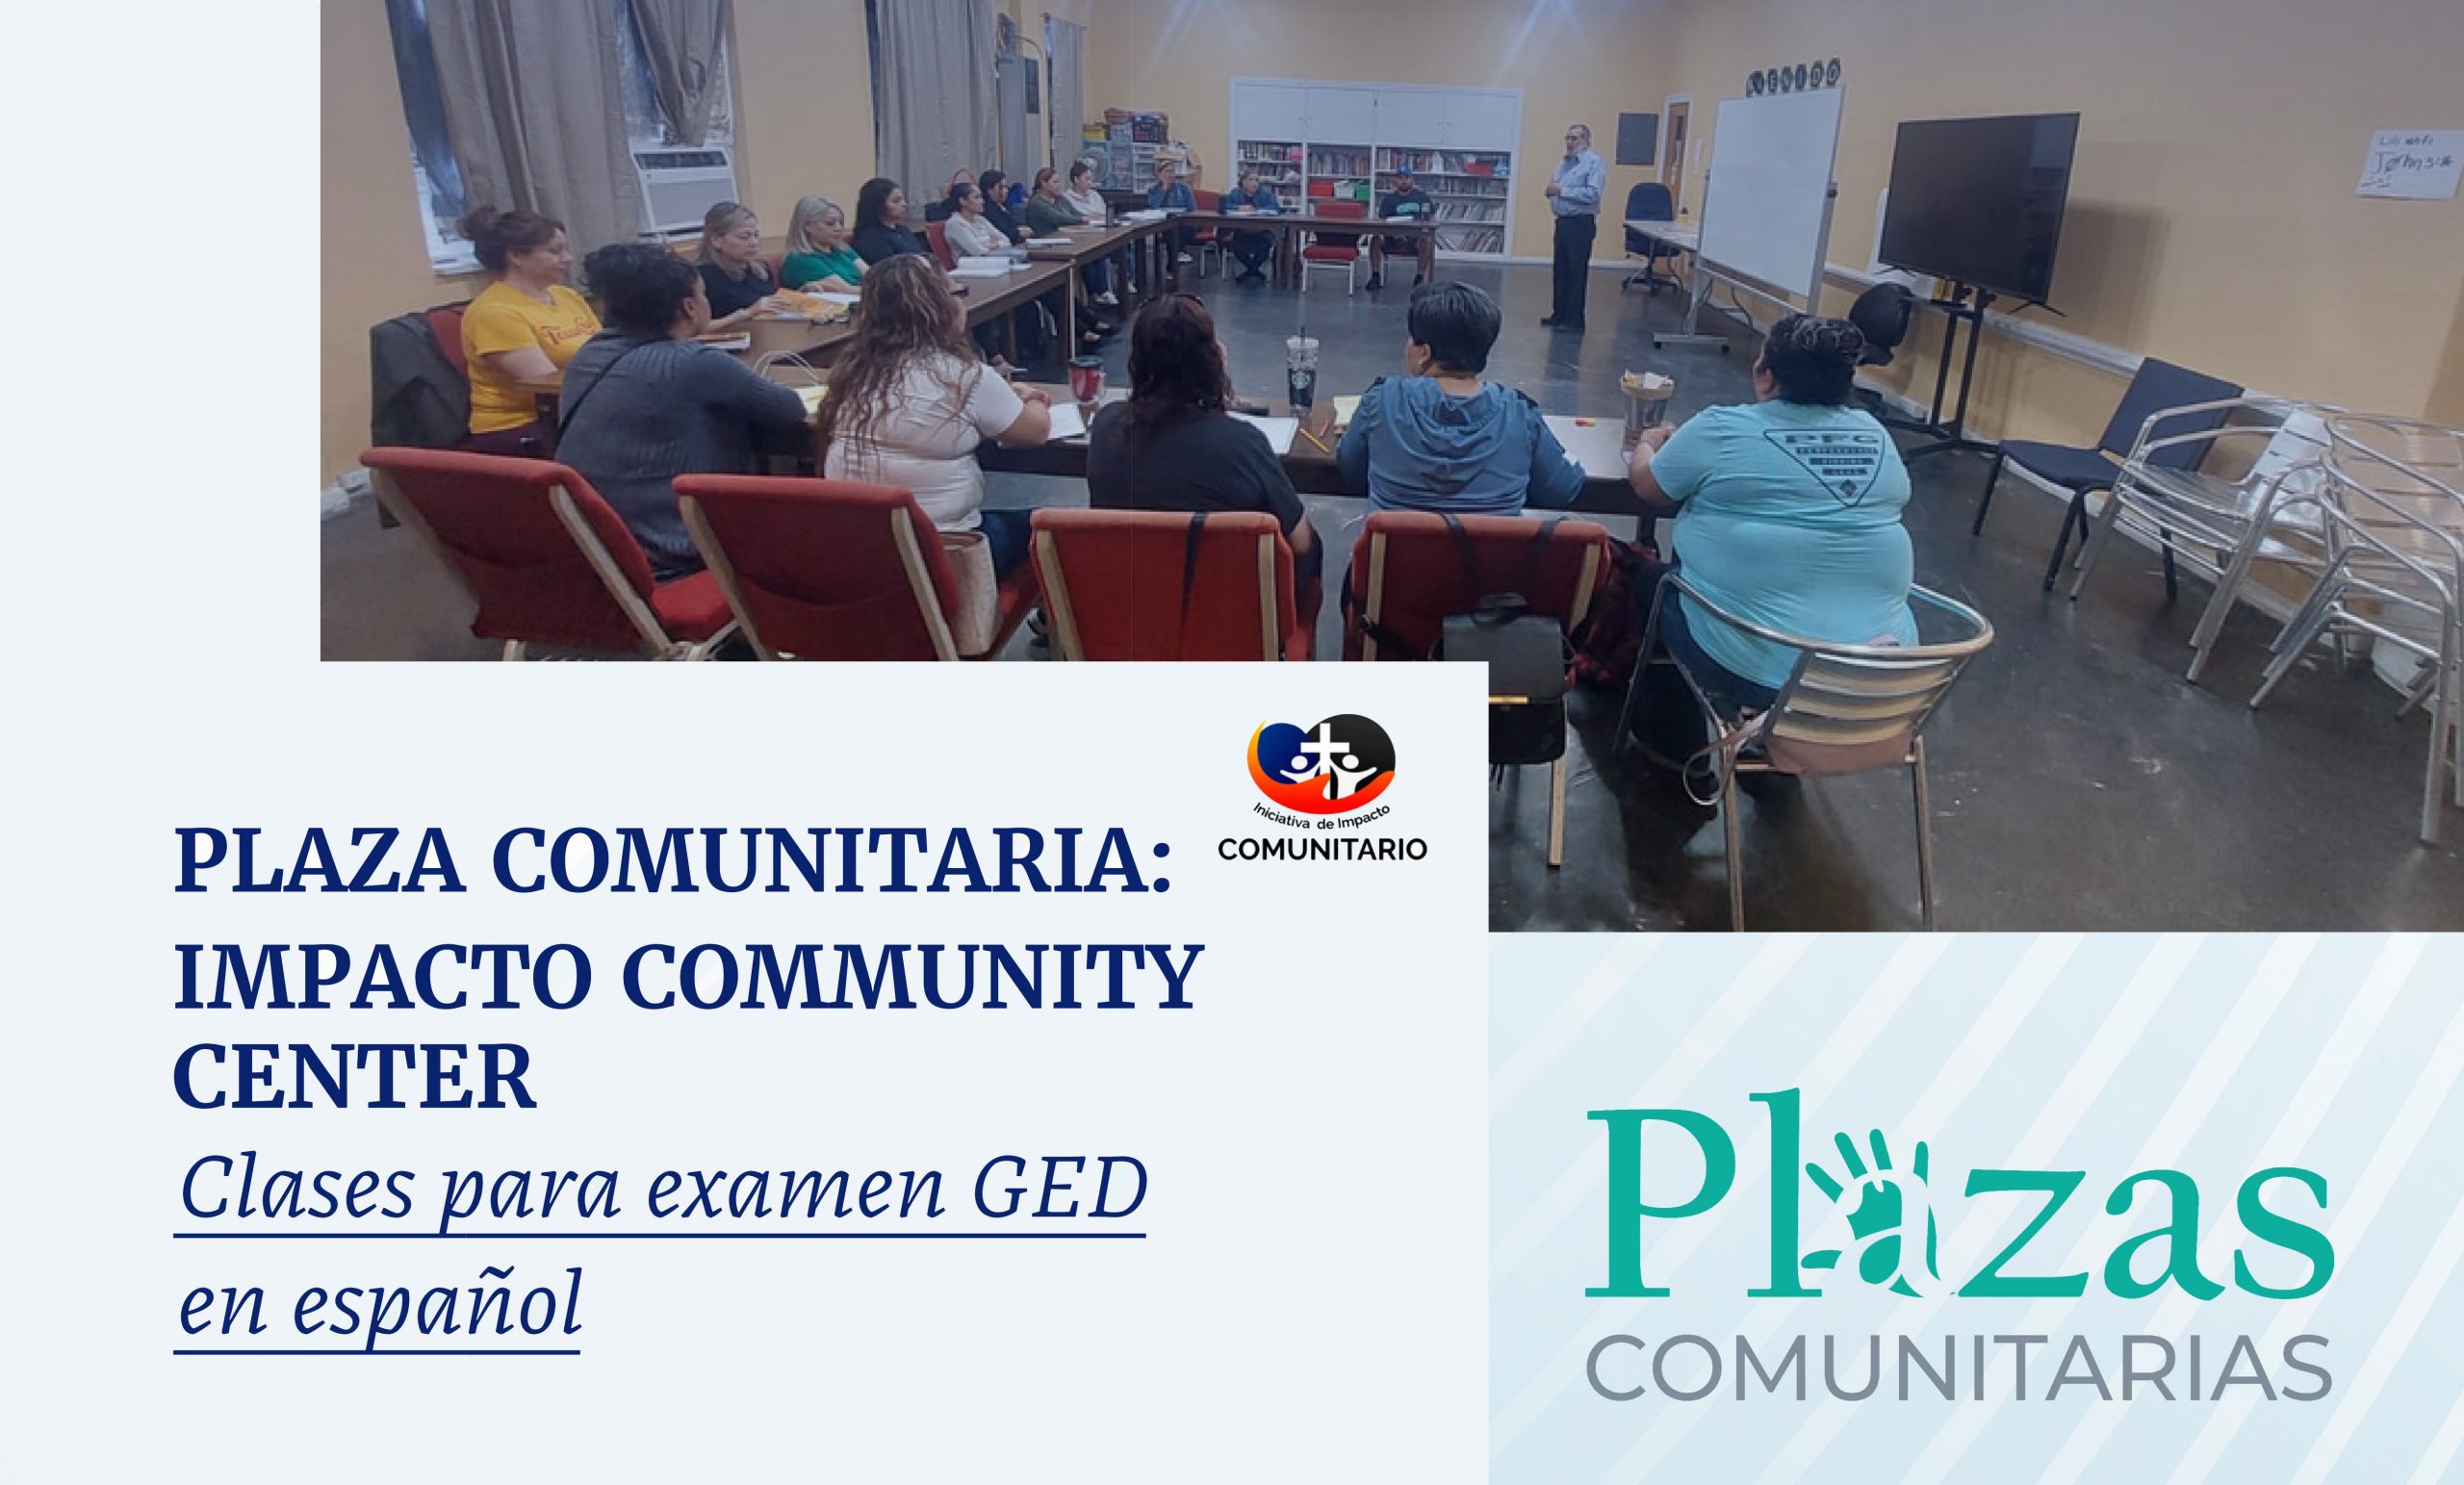 Plaza Comunitaria: Impacto Community Center